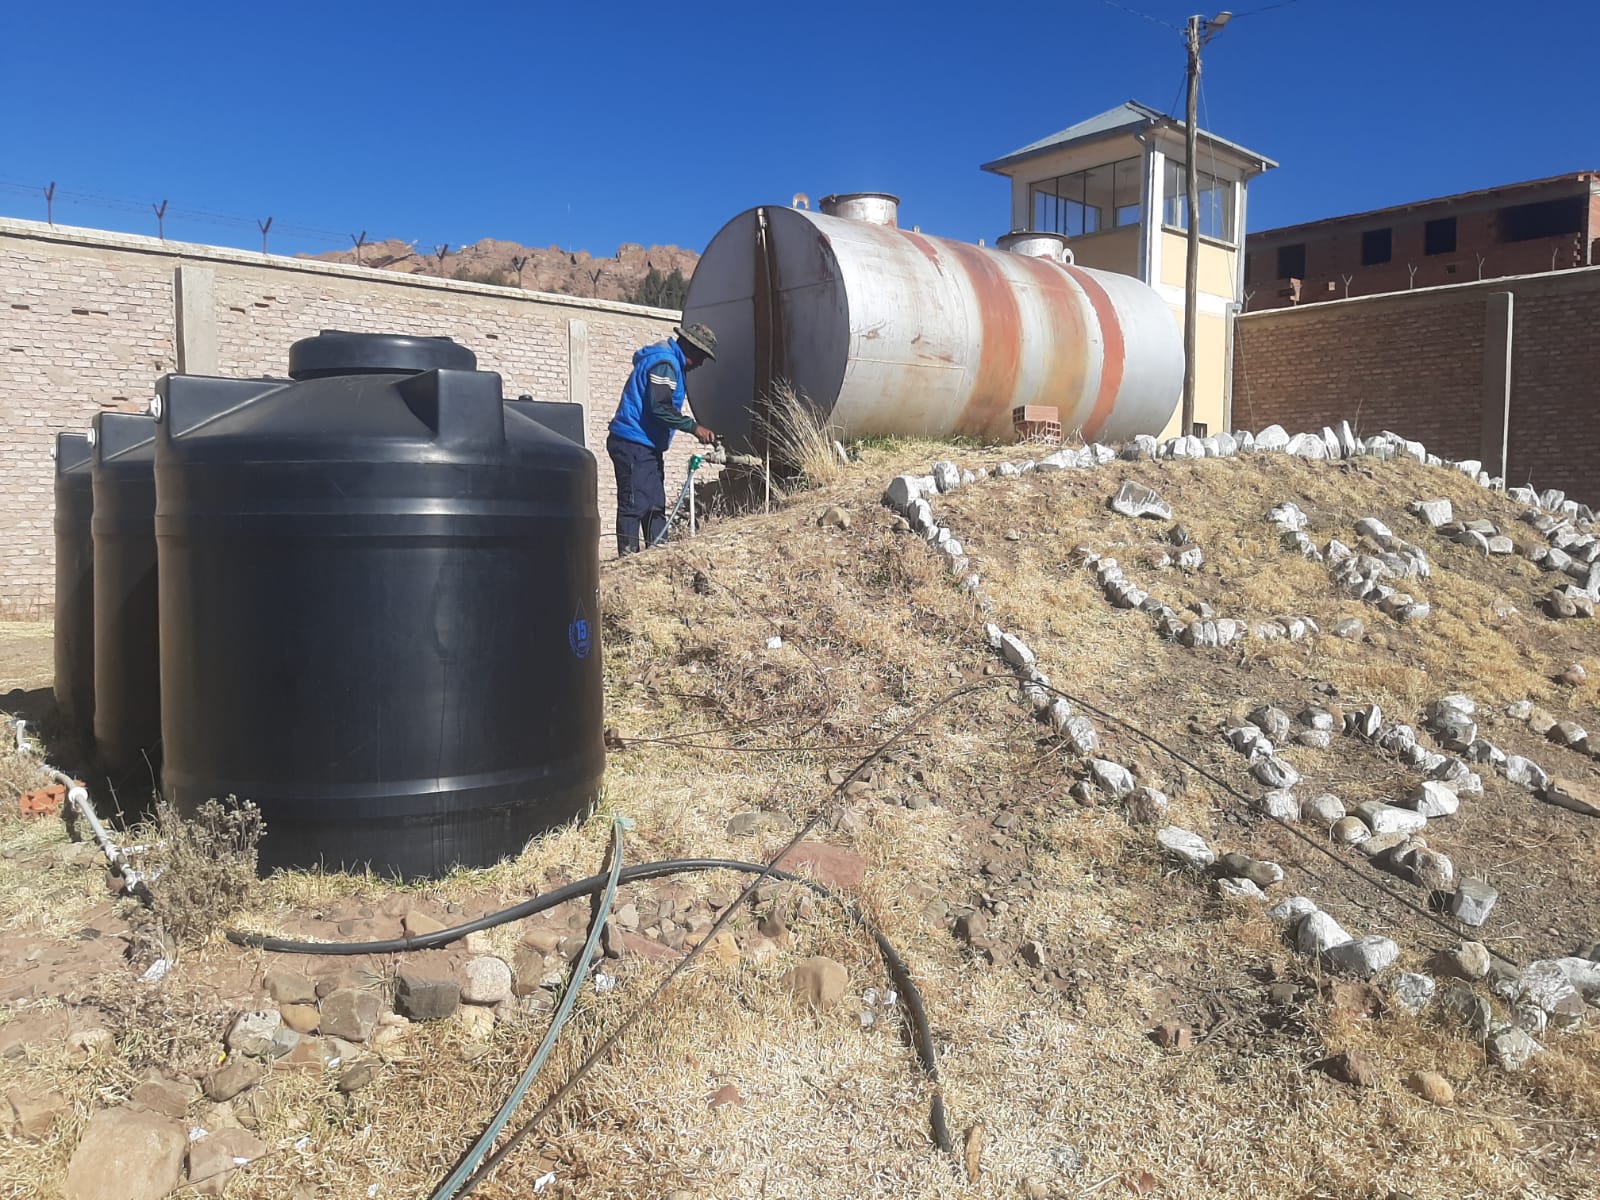 Defensoría del Pueblo gestiona dotación de agua potable para el centro penitenciario “San Miguel de Uncía”